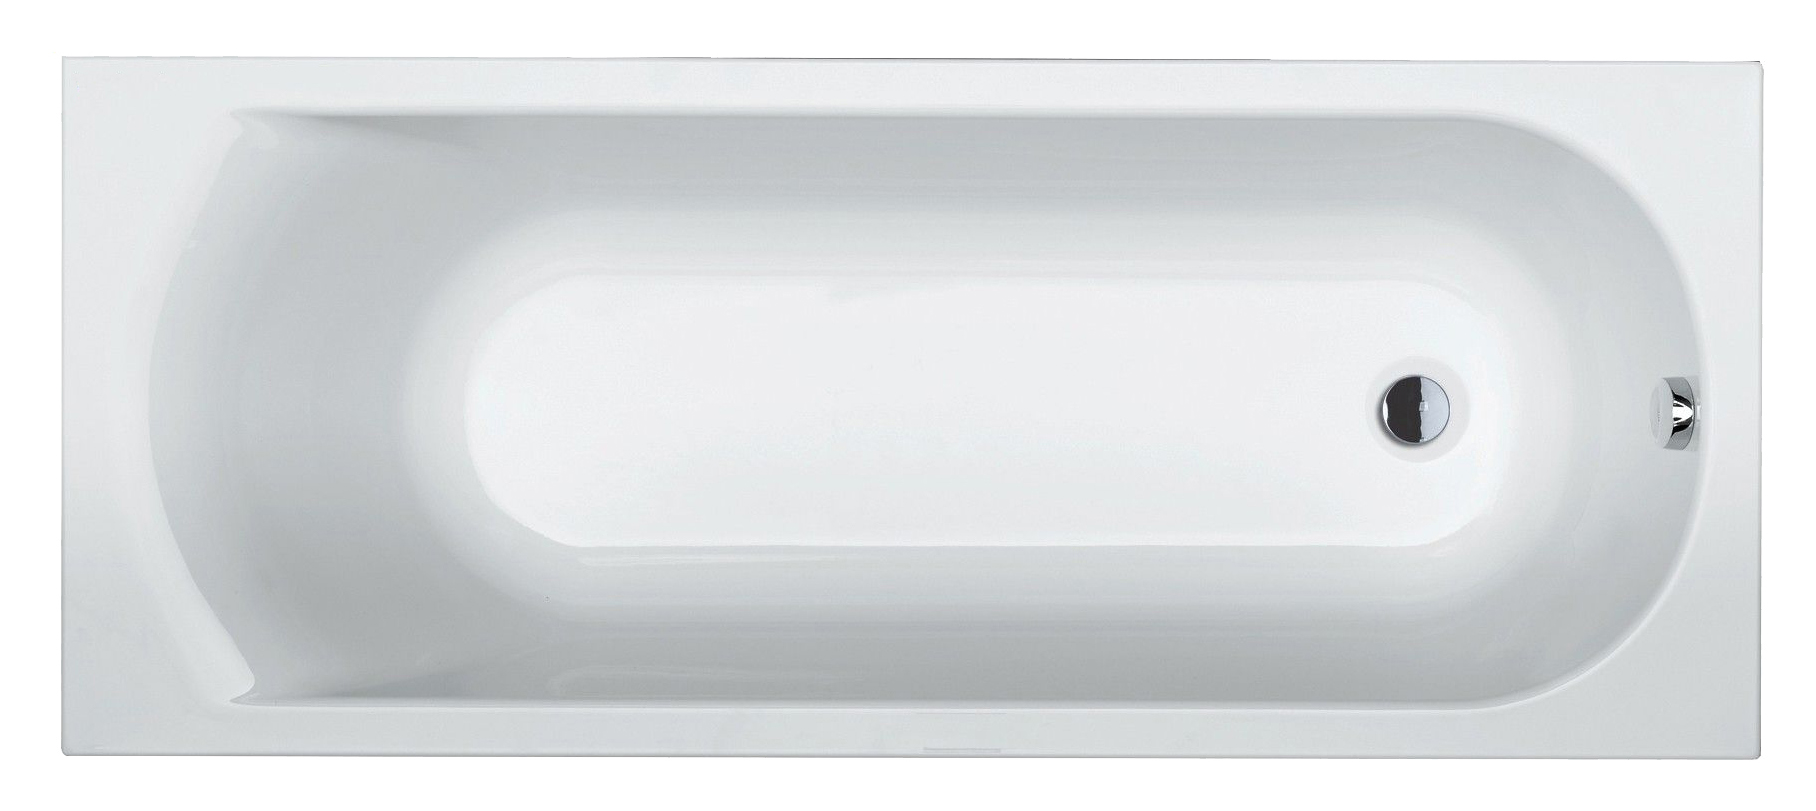 Акриловая ванна Riho Miami 180x80, цвет белый